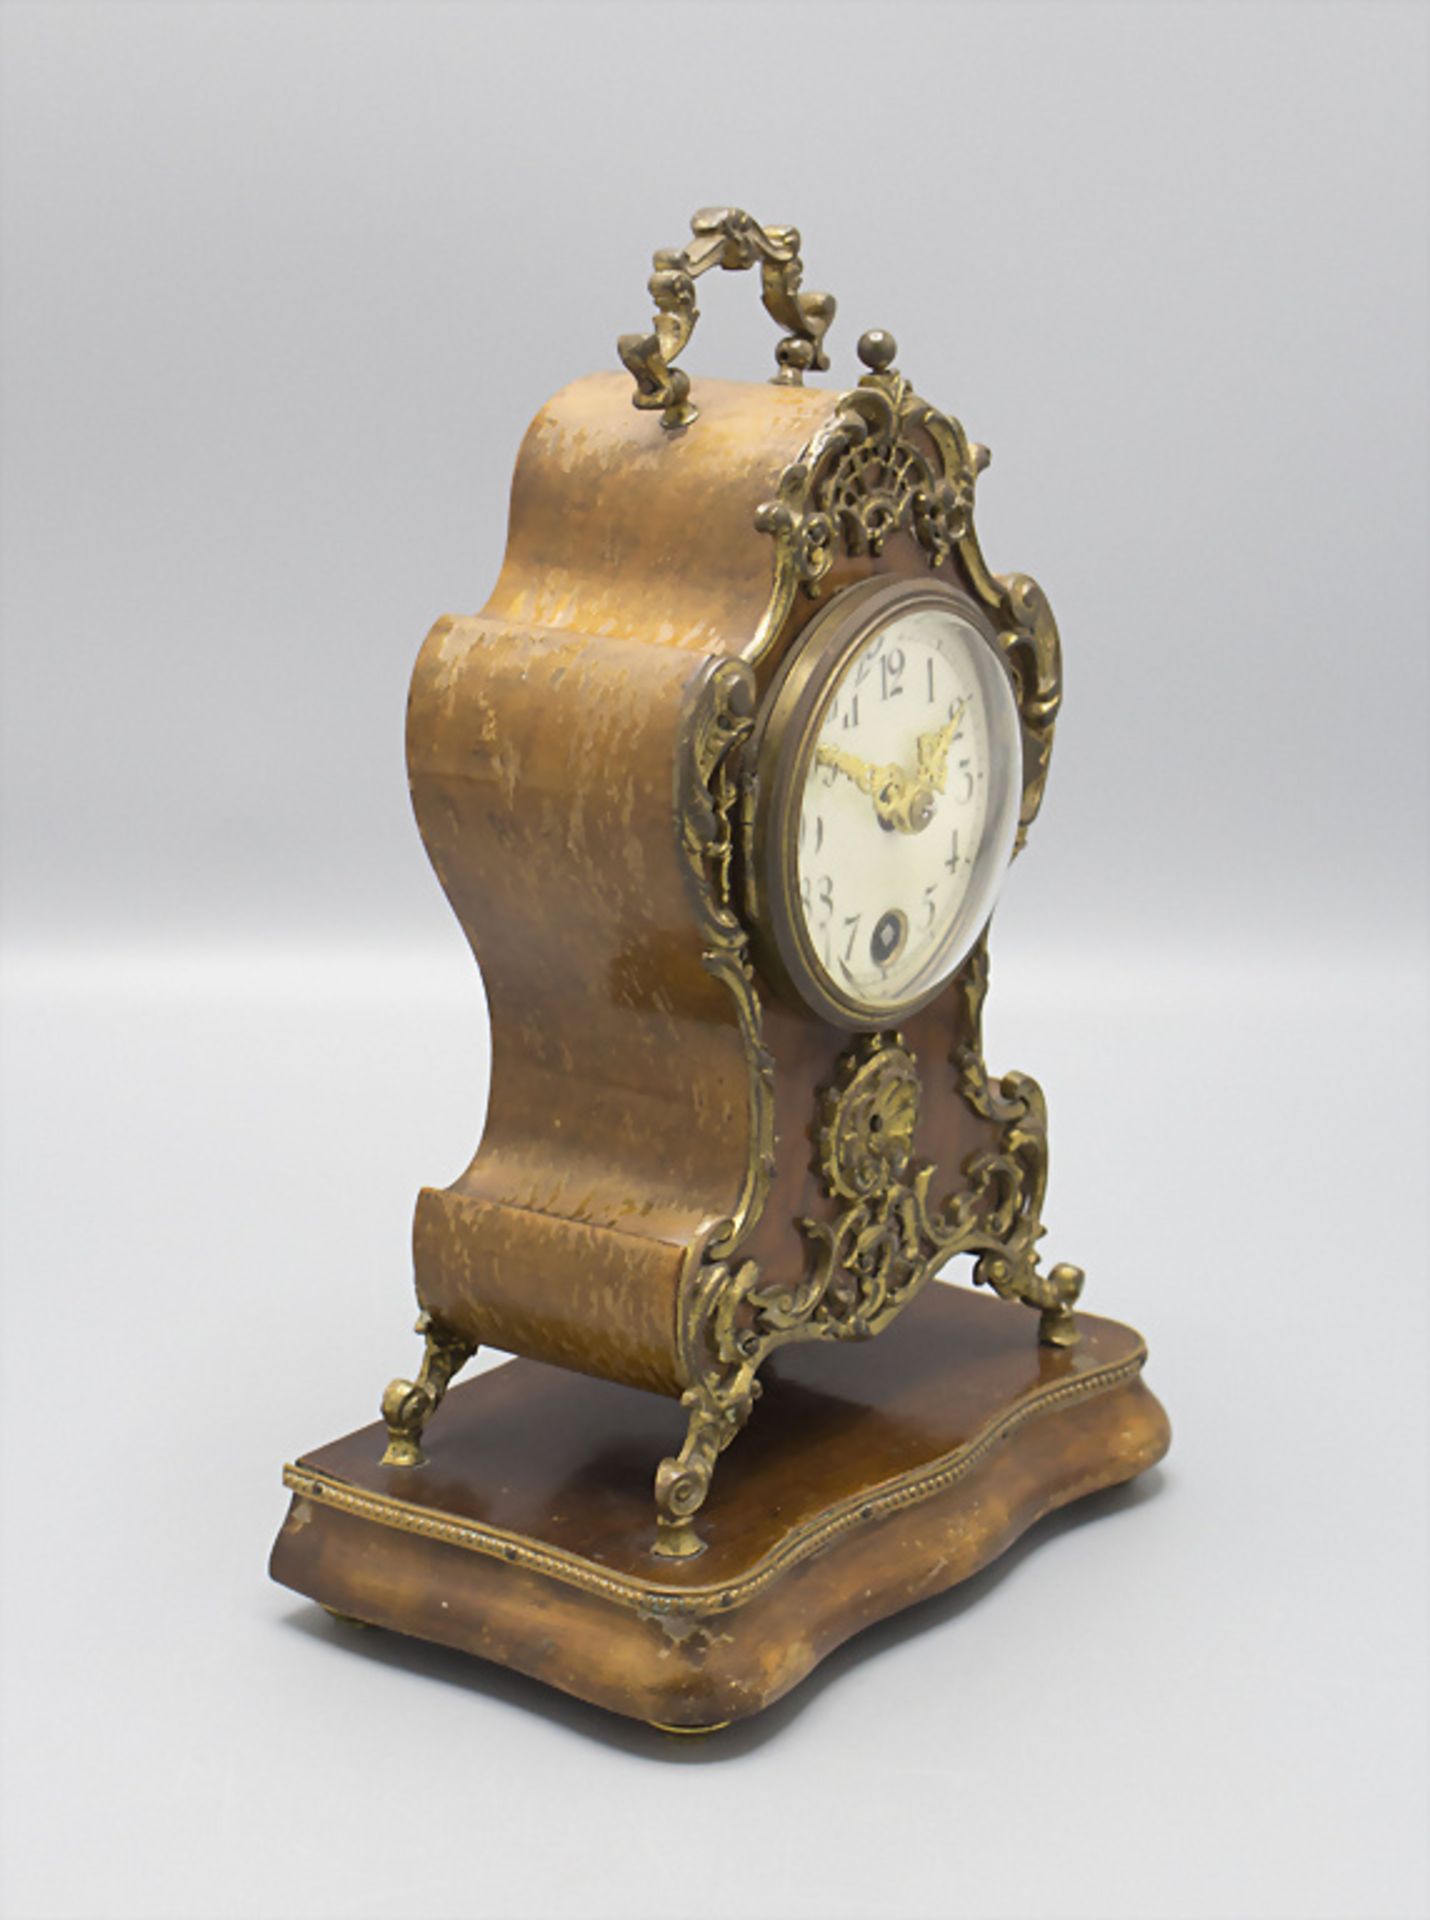 Lenzkirch Kaminuhr / A mantelpiece clock, um 1910 - Image 7 of 8